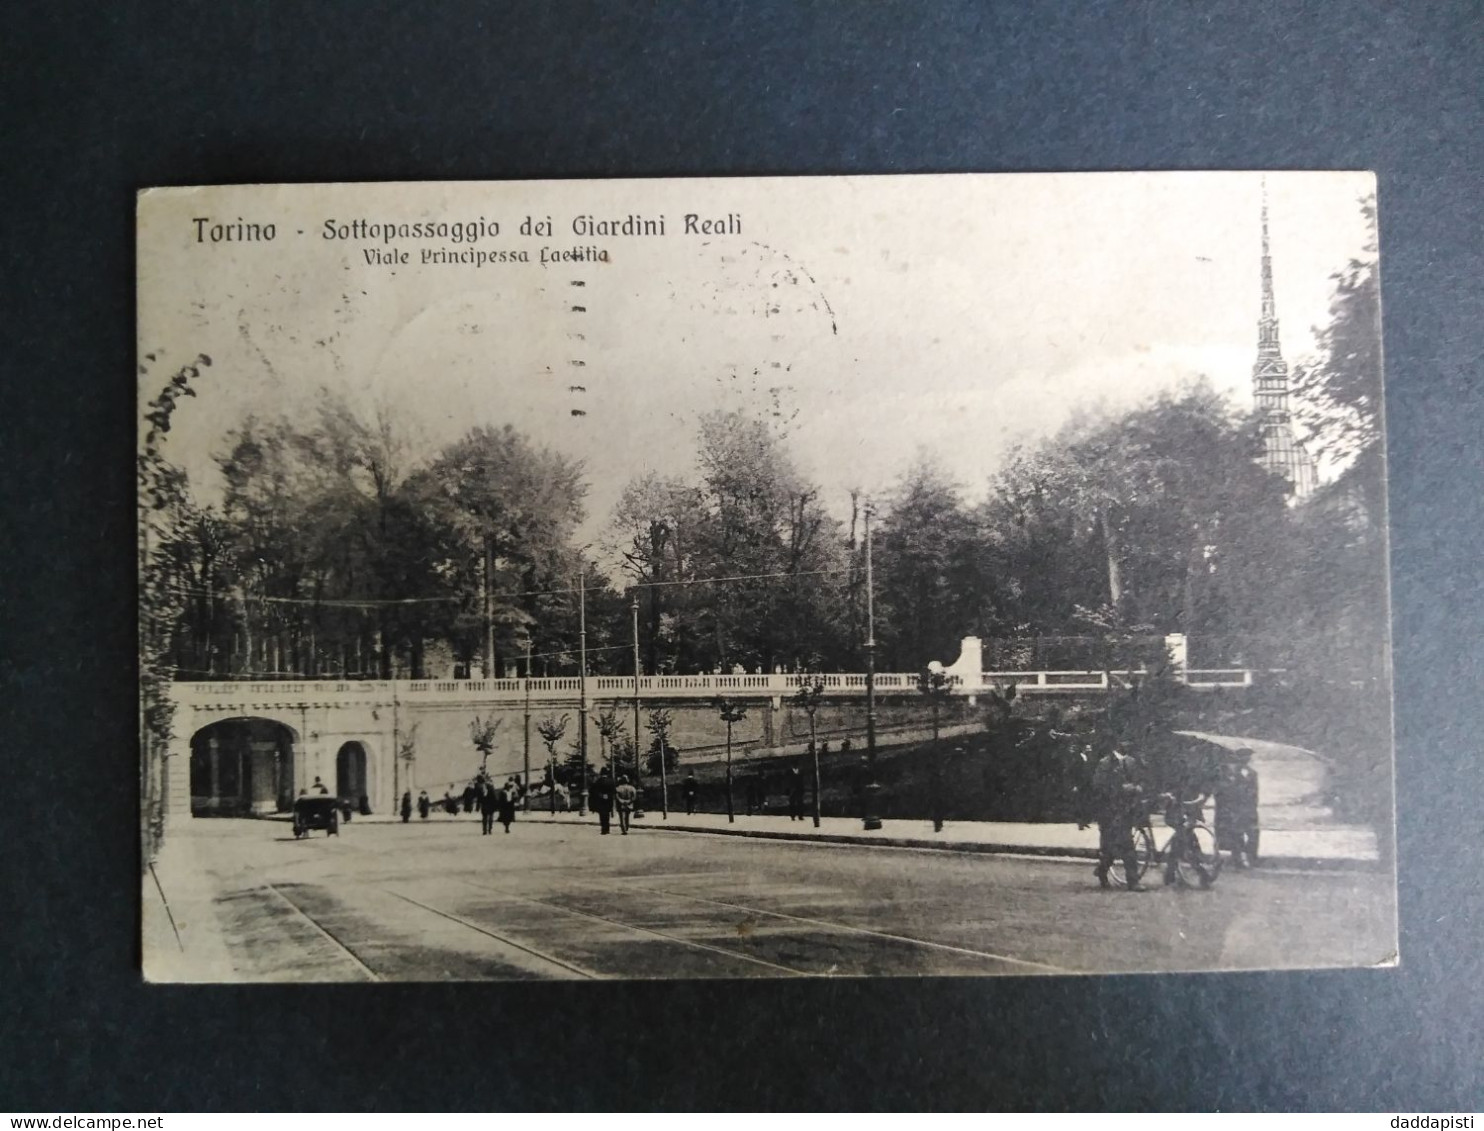 [S1] Torino - Sottopassaggio Dei Giardini Reali Con Passanti E Calesse. Piccolo Formato,Viaggiata, 1925 - Parchi & Giardini